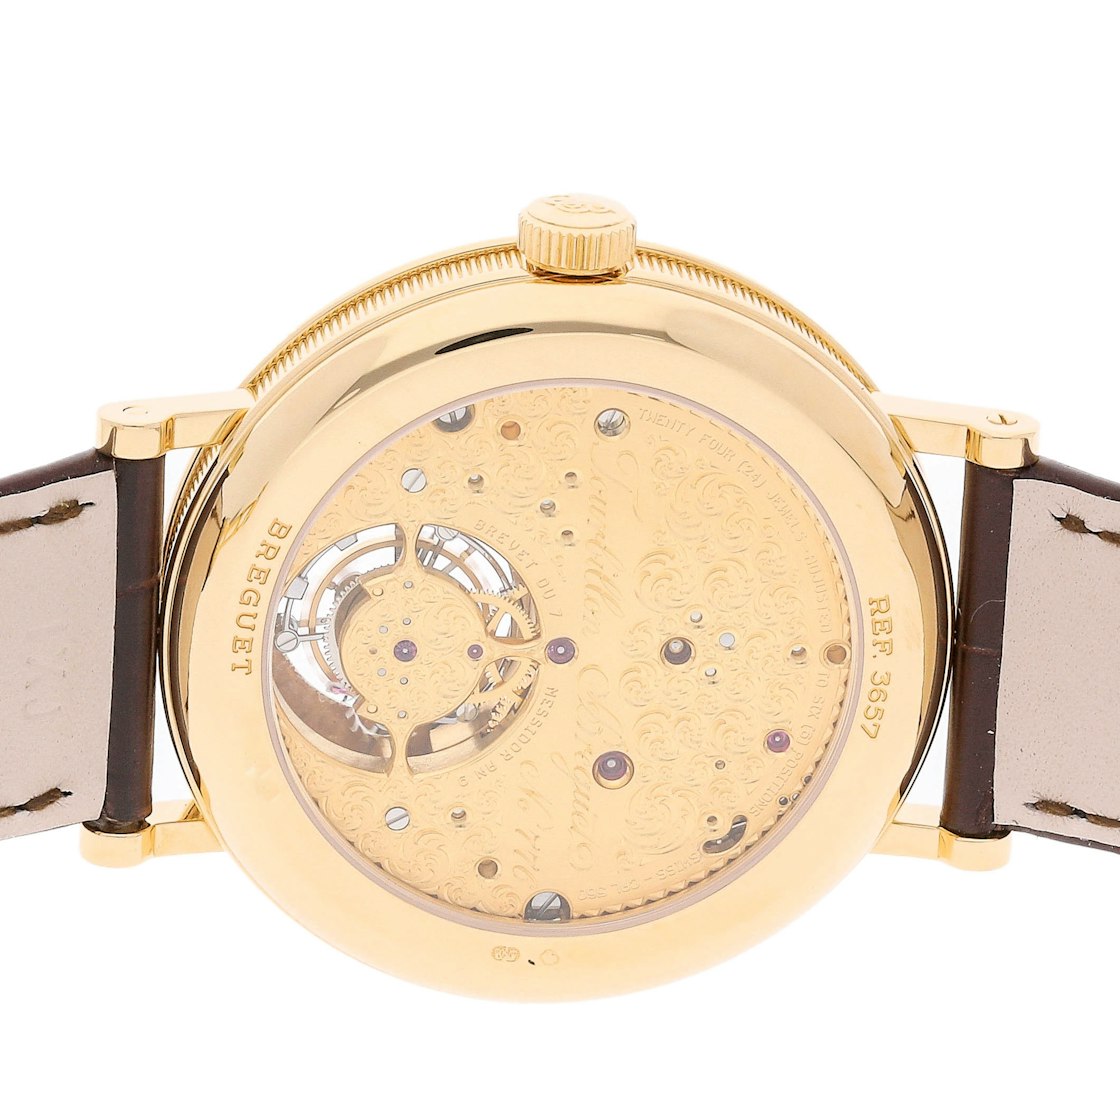 Breguet Classique Complications Tourbillon 18K Yellow Gold Men's Watch